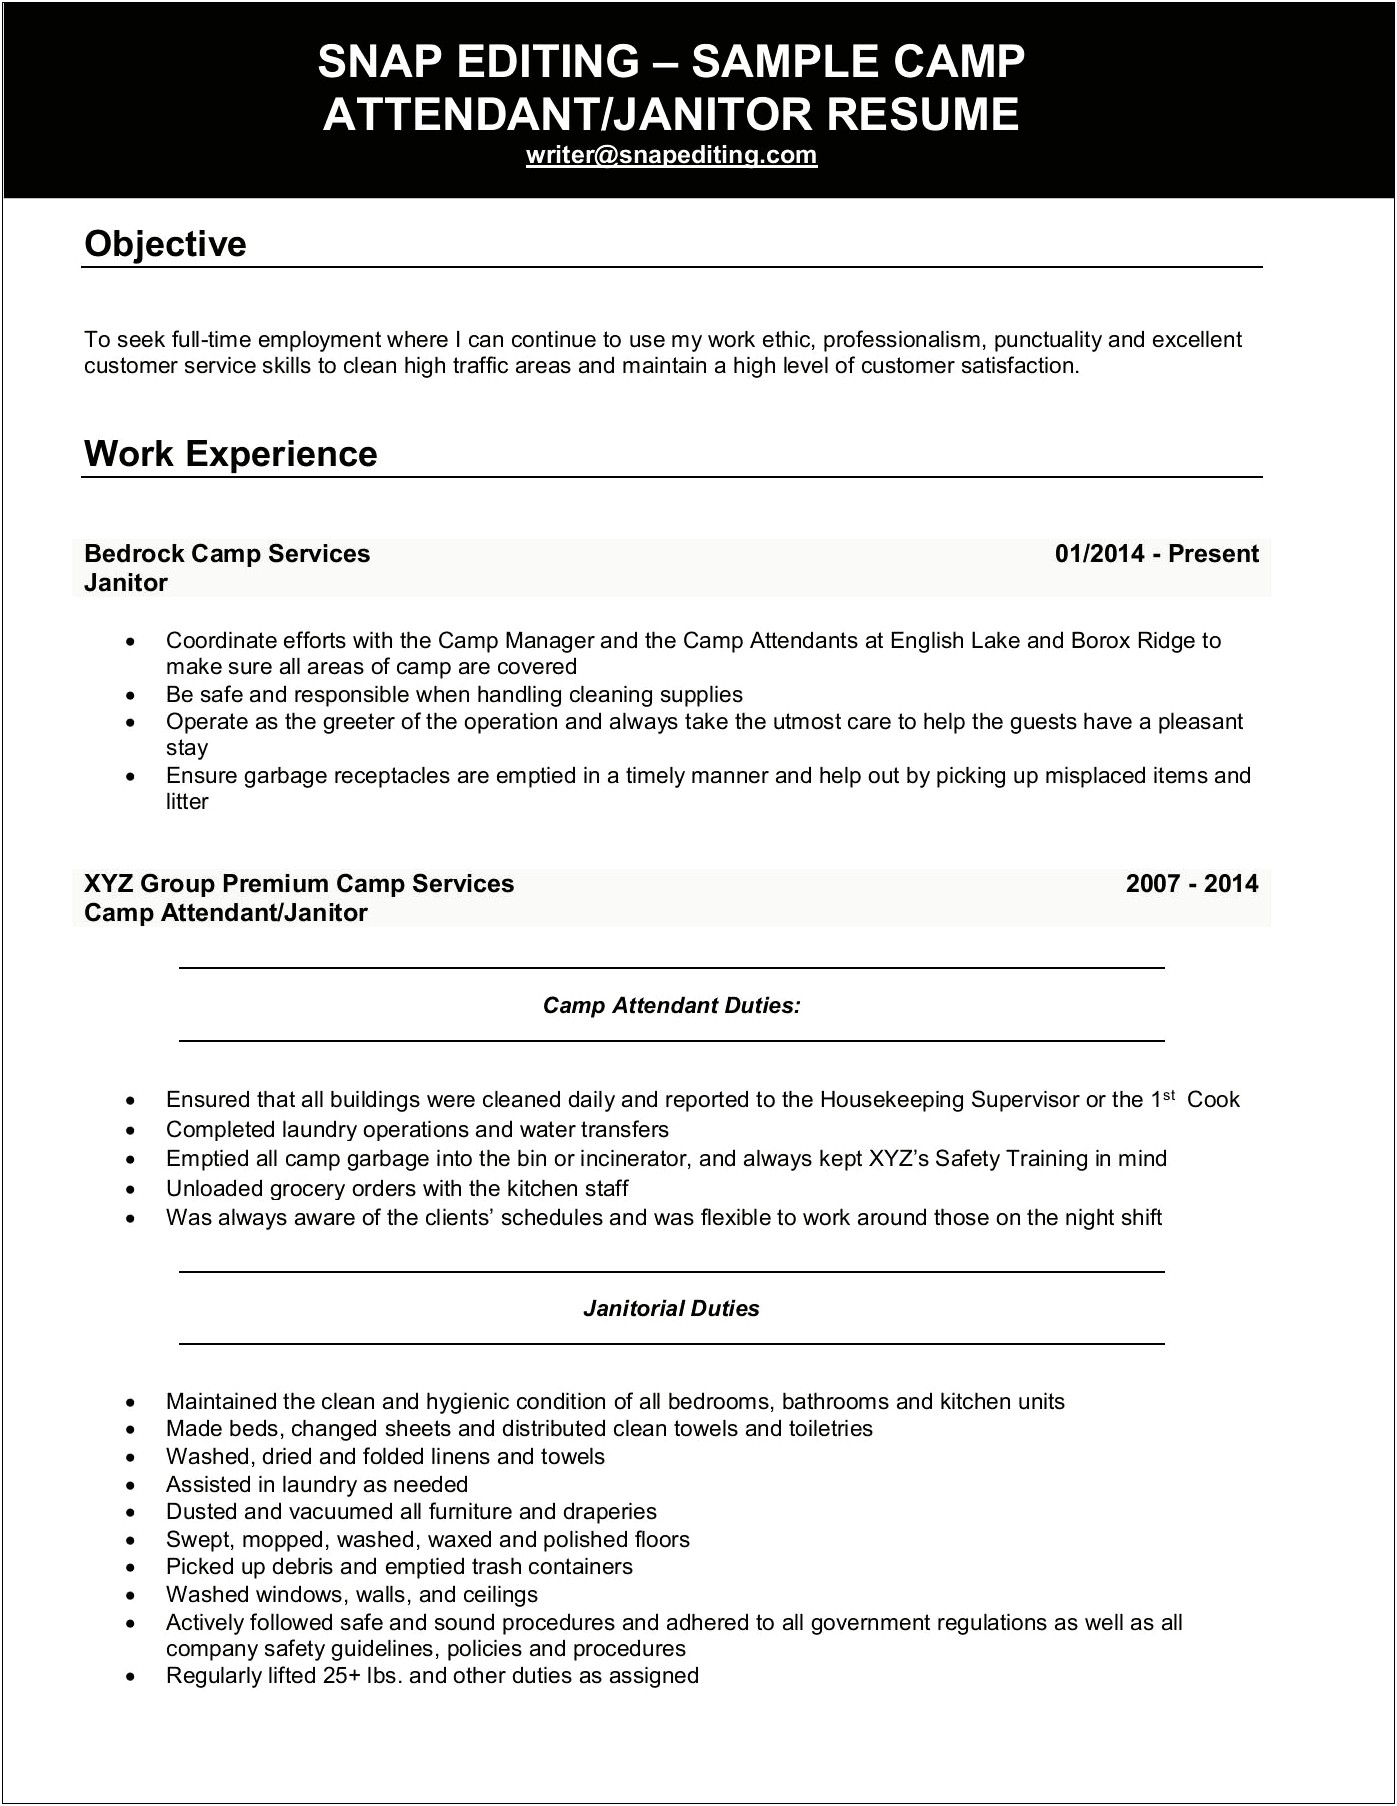 Sample Of Resume For Housekeeping Supervisor